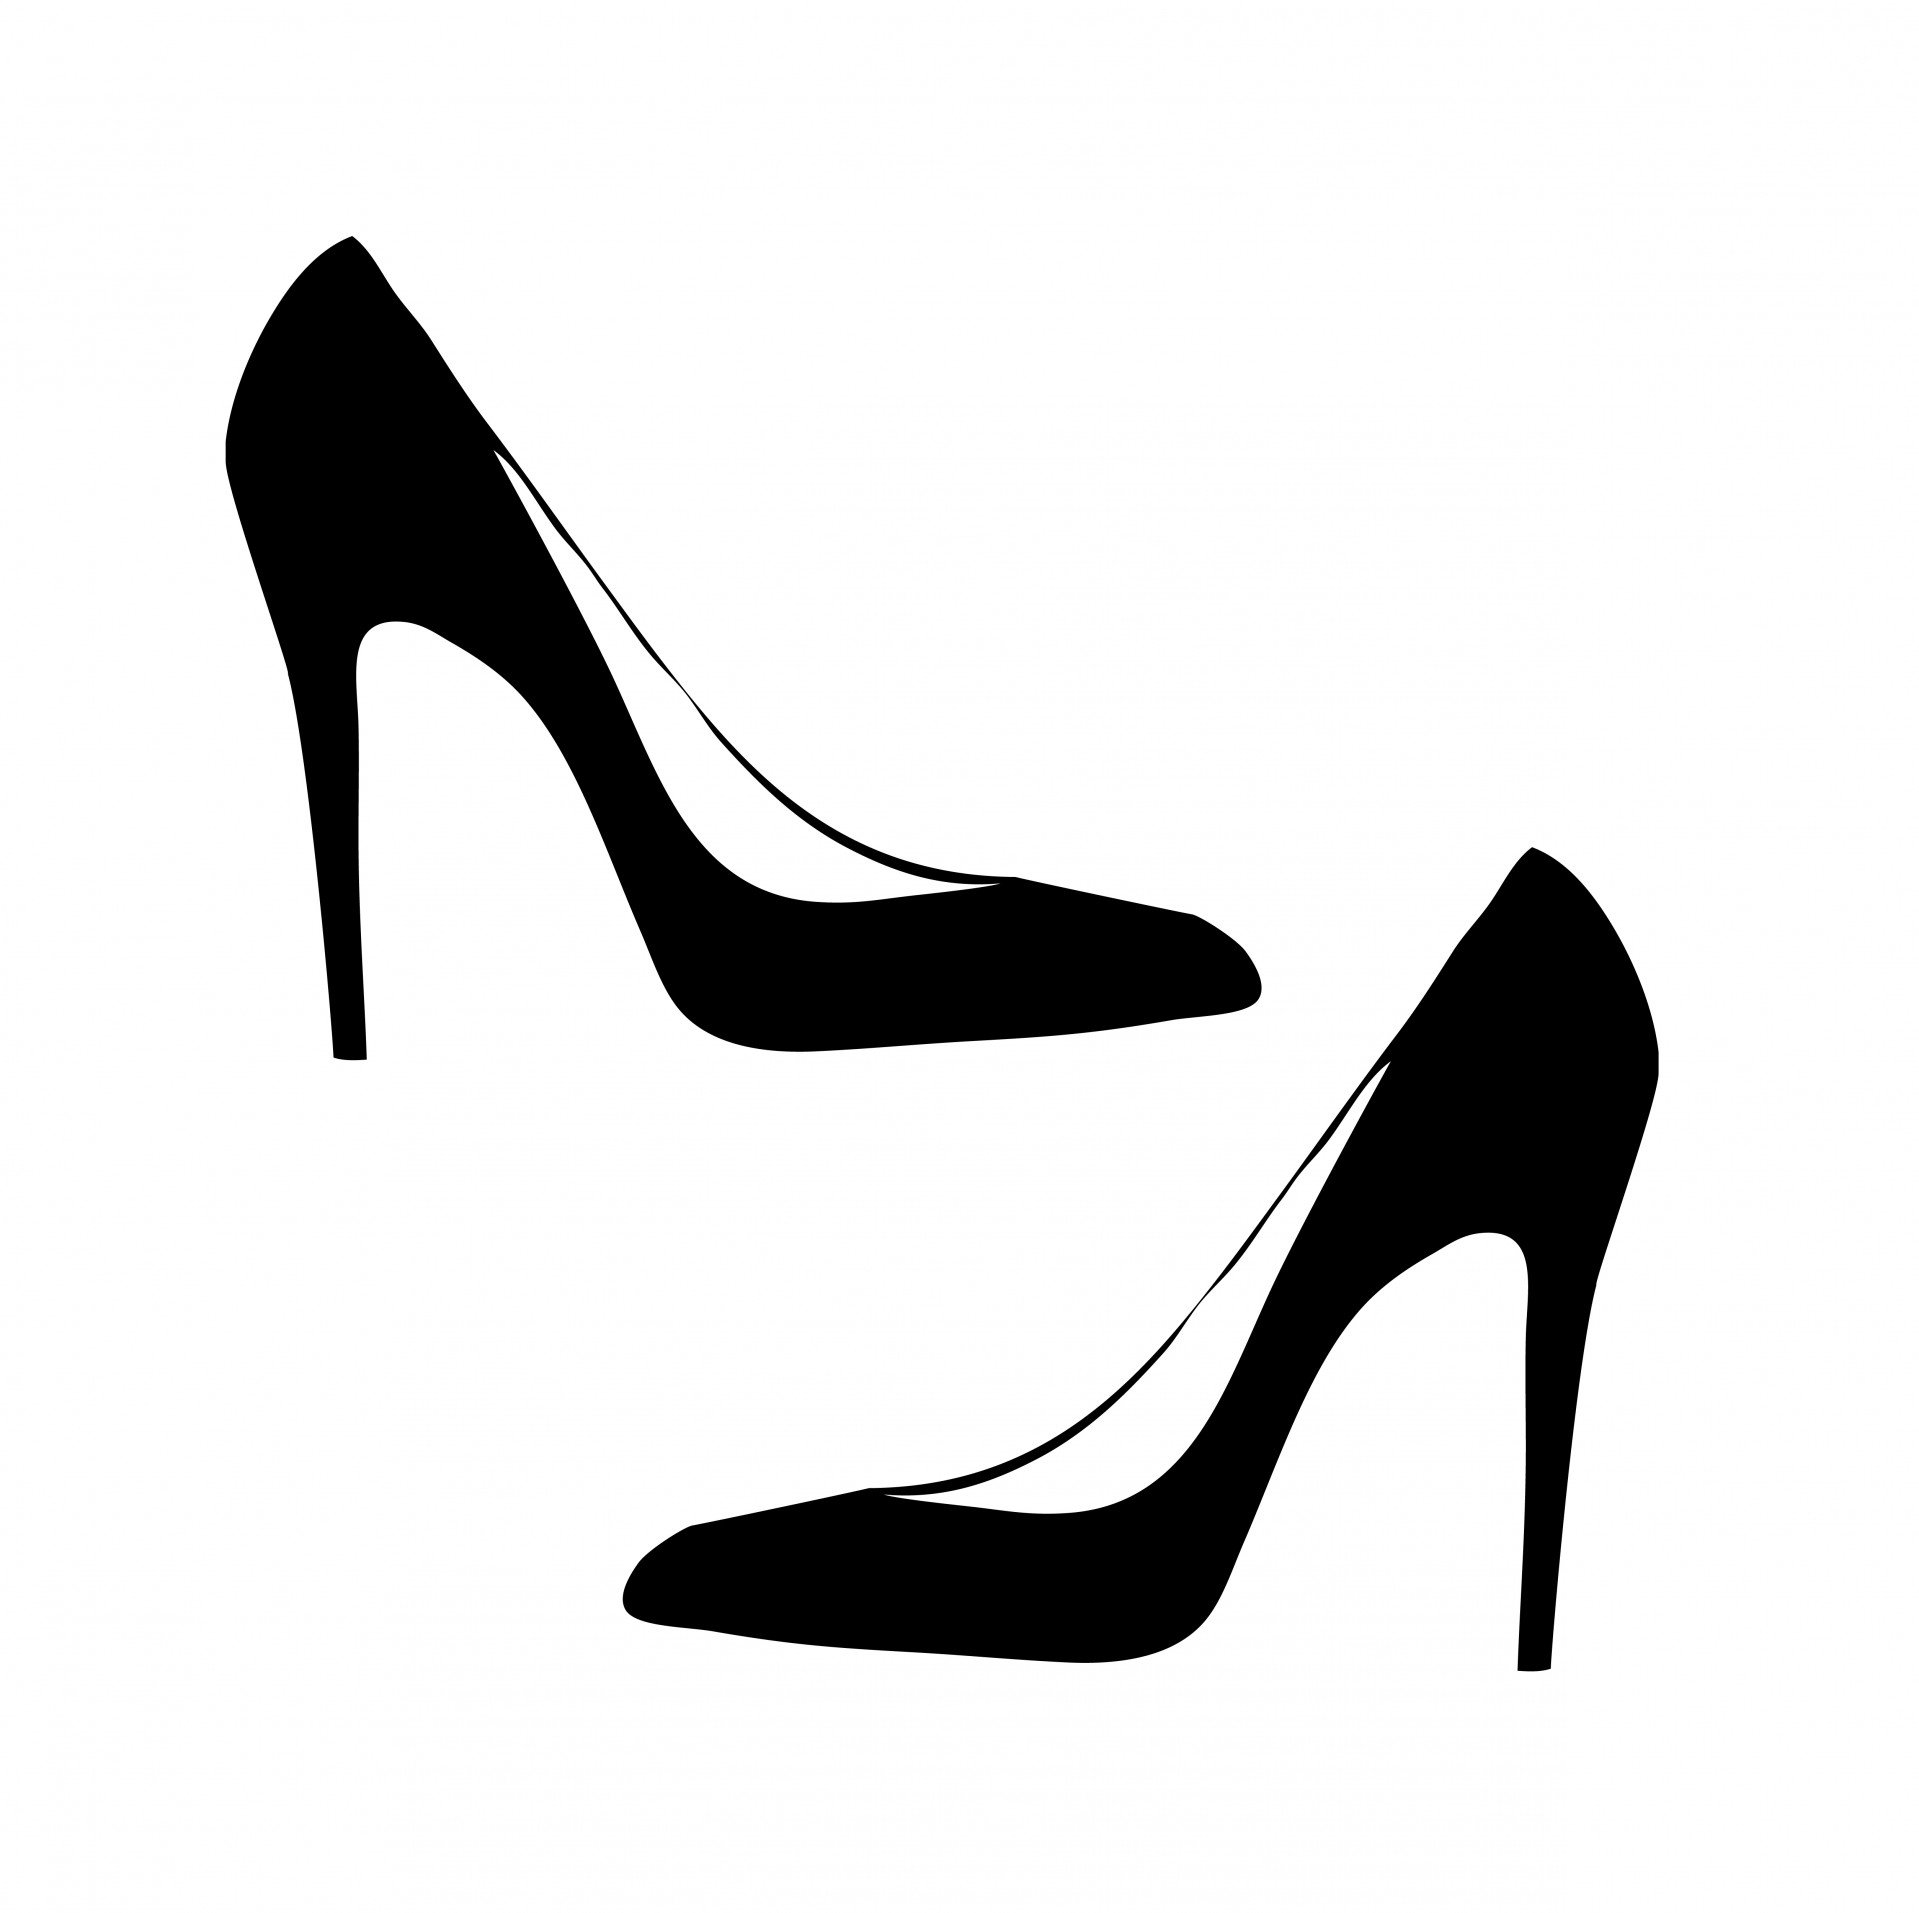 Vector - Women and men shoe i